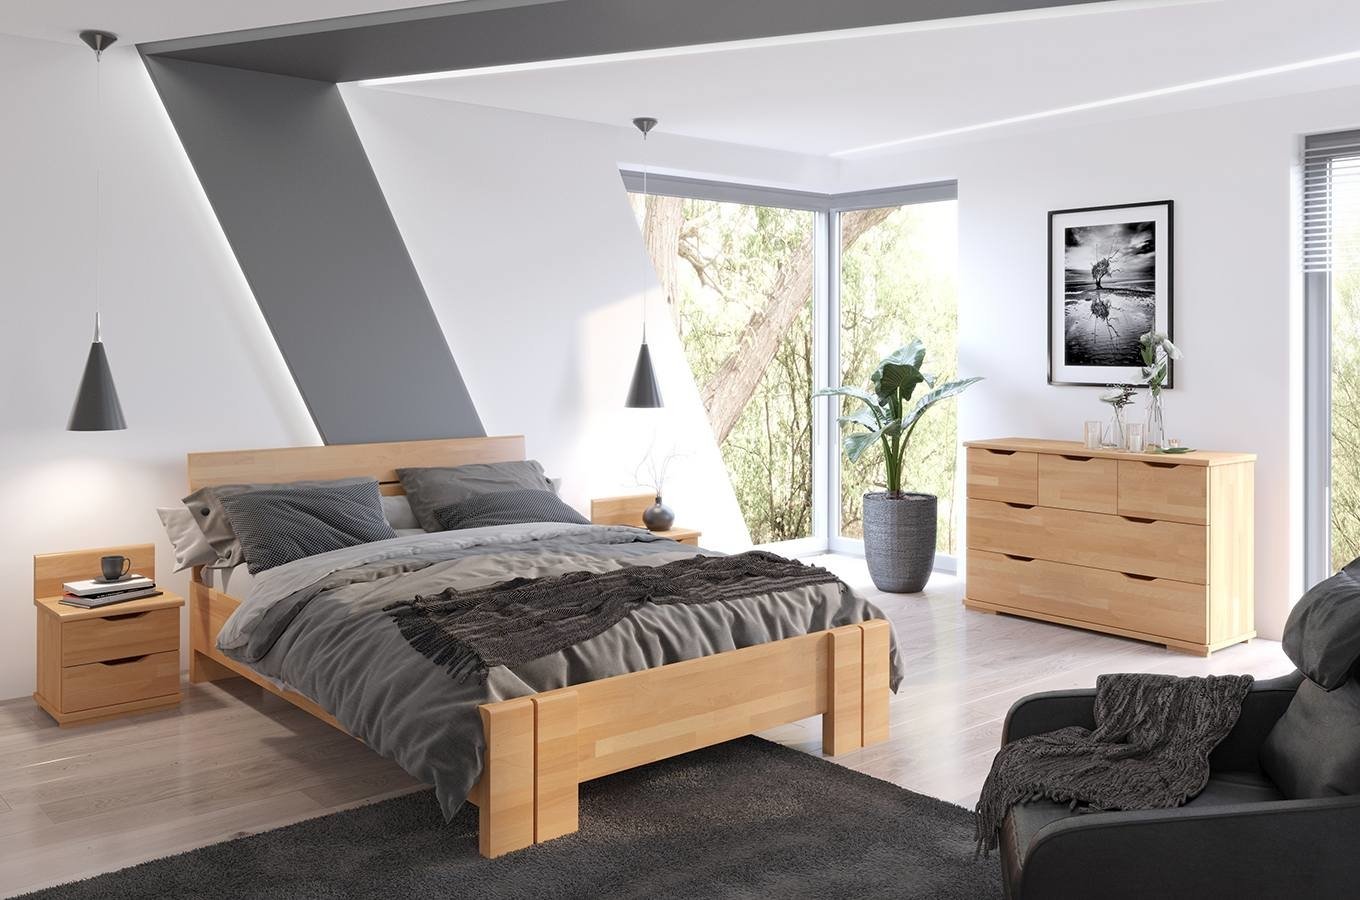 ZESTAW: Łóżko drewniane bukowe Visby ARHUS High + Materac kieszeniowy Visby NORLAND / z pianką poliuretanową